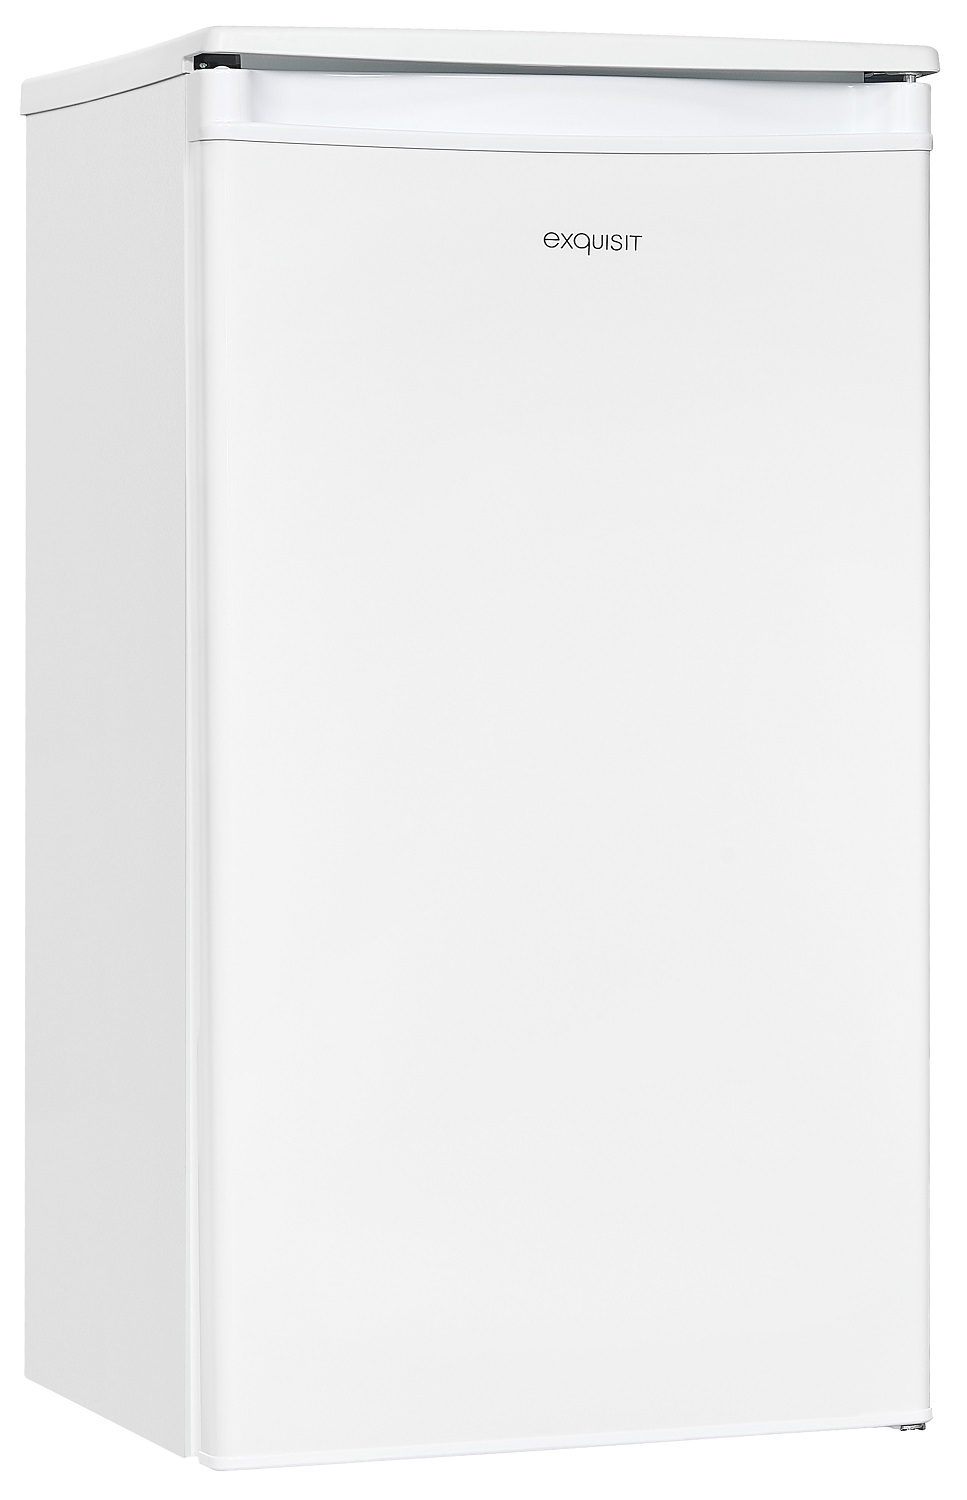 COMFEE RCD132WH1 Tisch Kühlschrank (F, 85 cm hoch, Weiß)